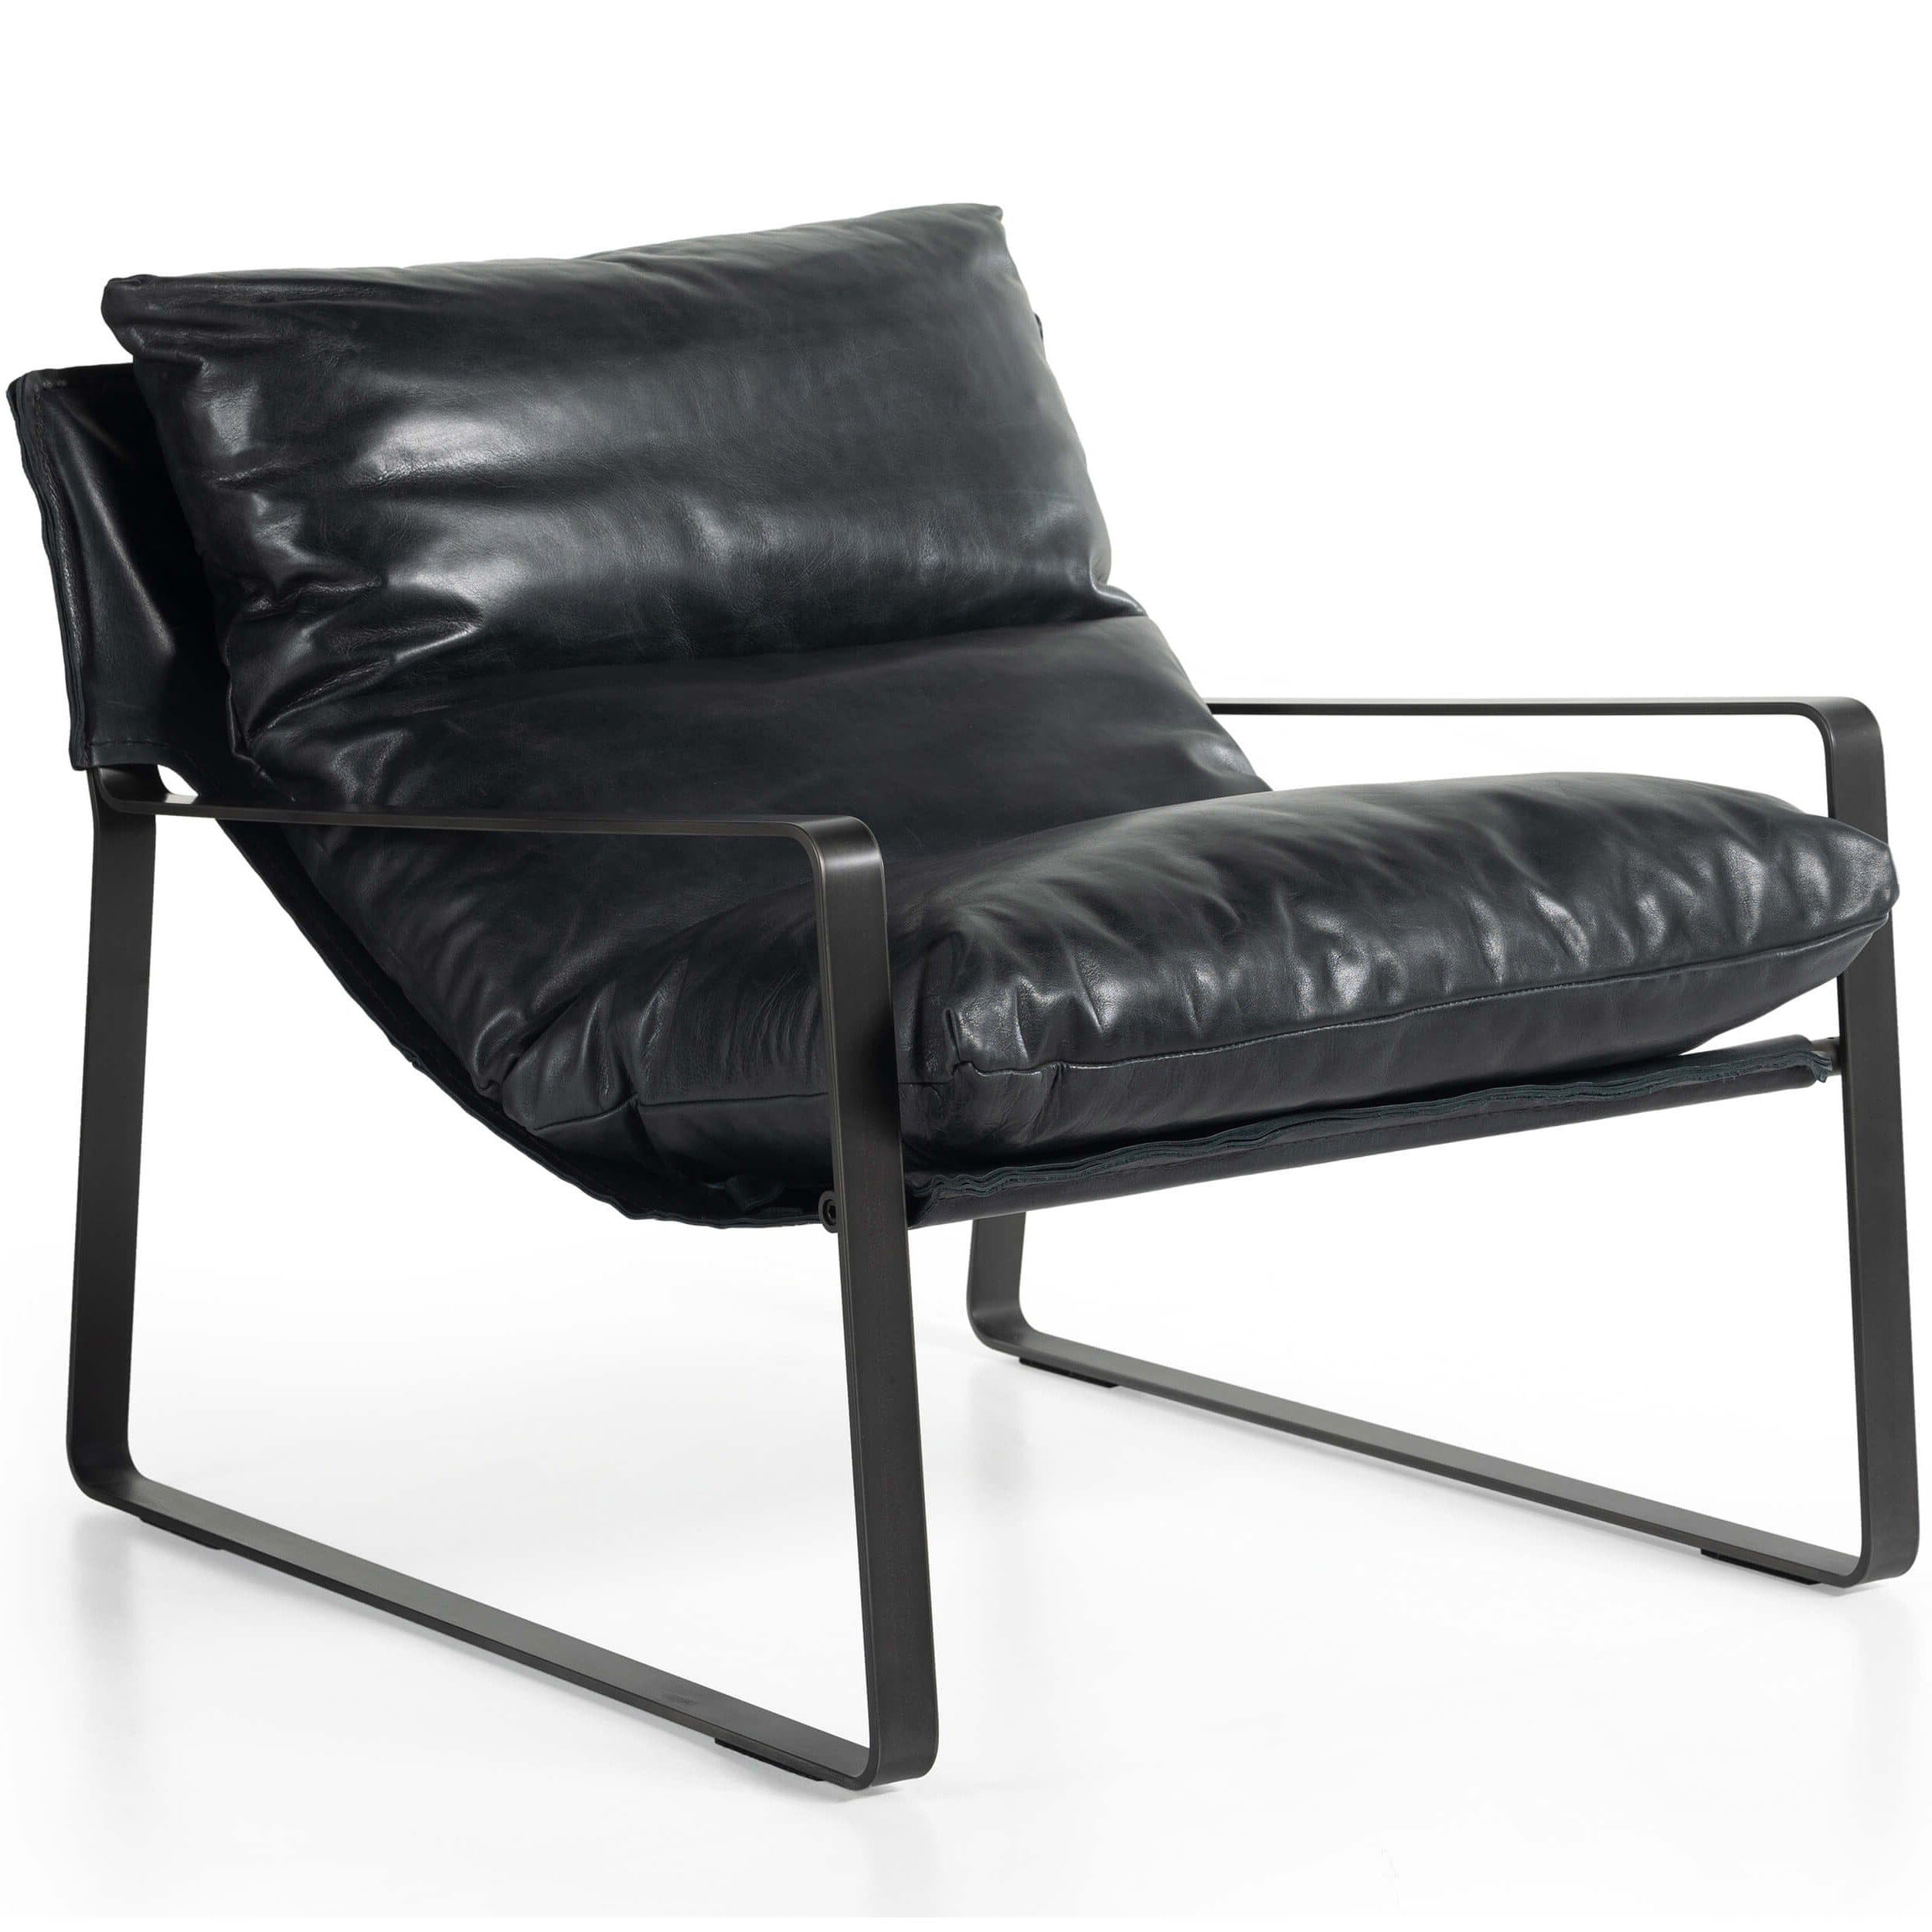 Image of Emmett Leather Sling Chair, Dakota Black